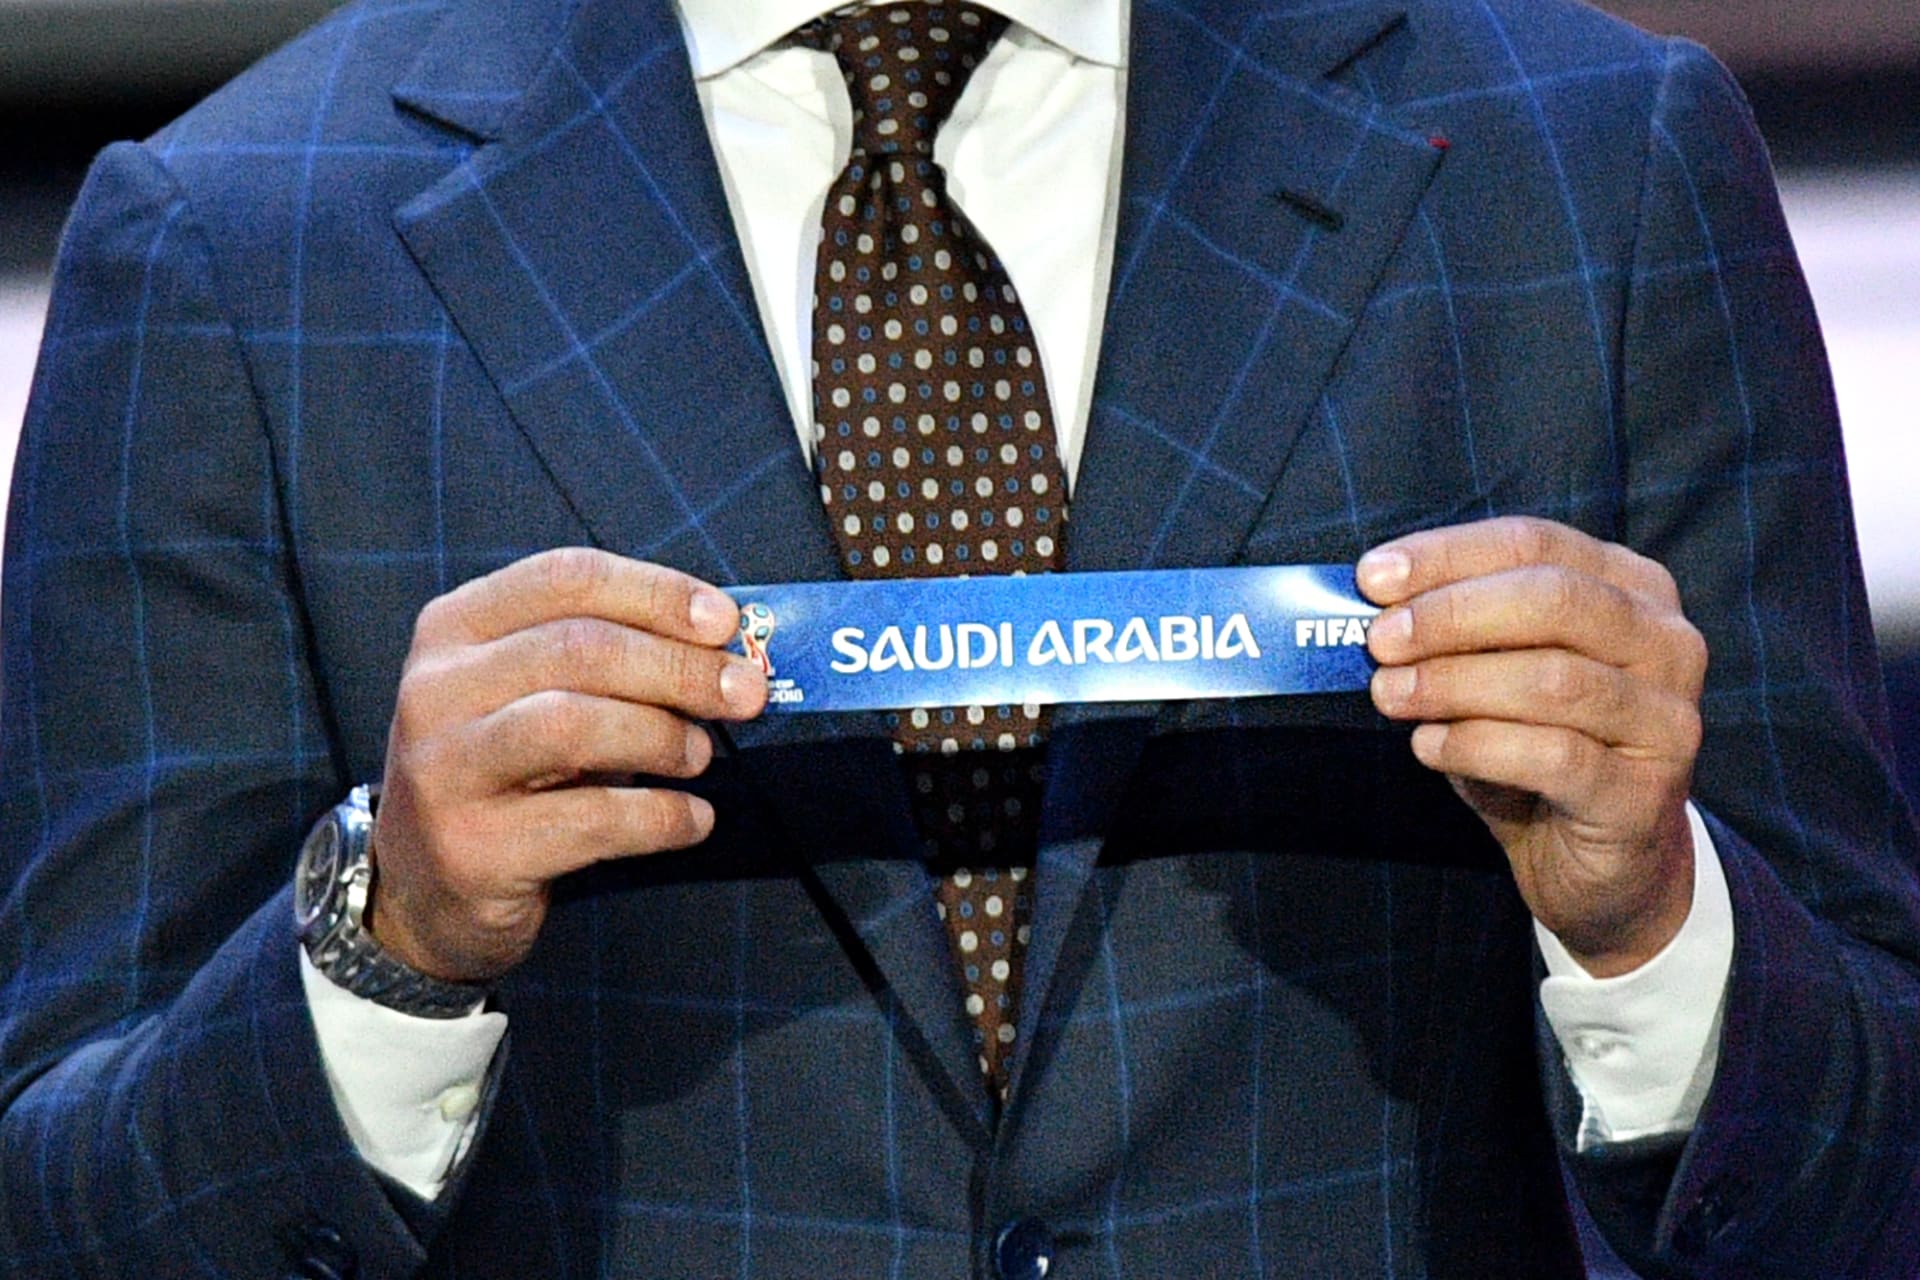 لماذا ستشكل مواجهة السعودية وروسيا في افتتاح كأس العالم حدثا تاريخيا للعرب؟ 